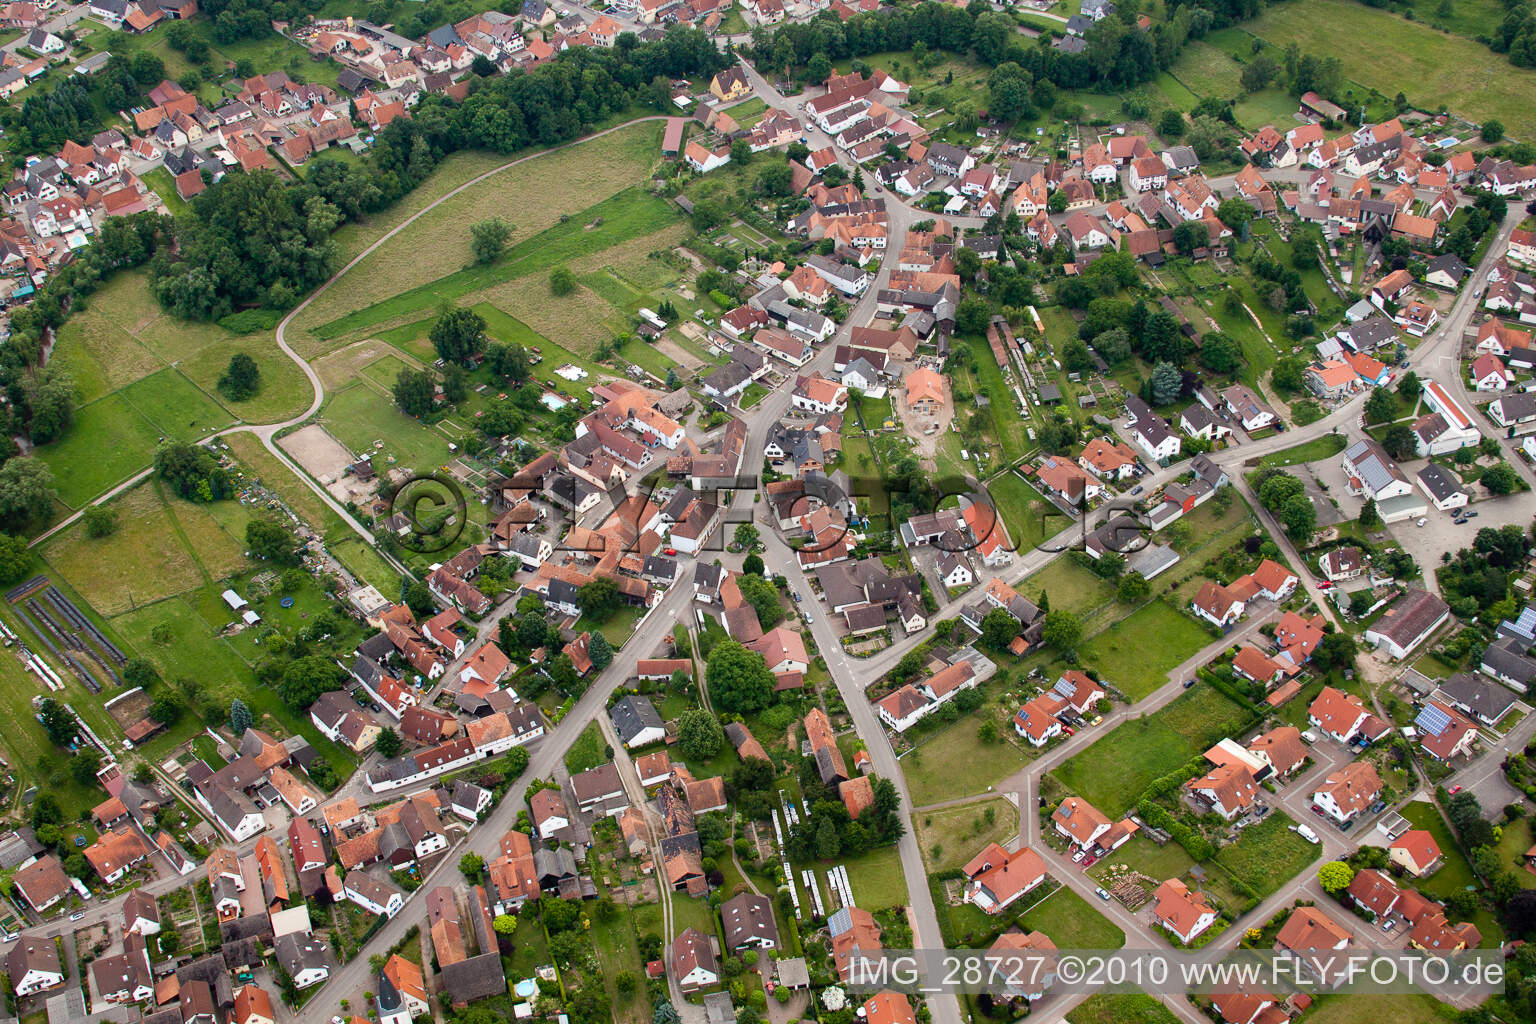 Drone recording of Scheibenhardt in Scheibenhard in the state Bas-Rhin, France